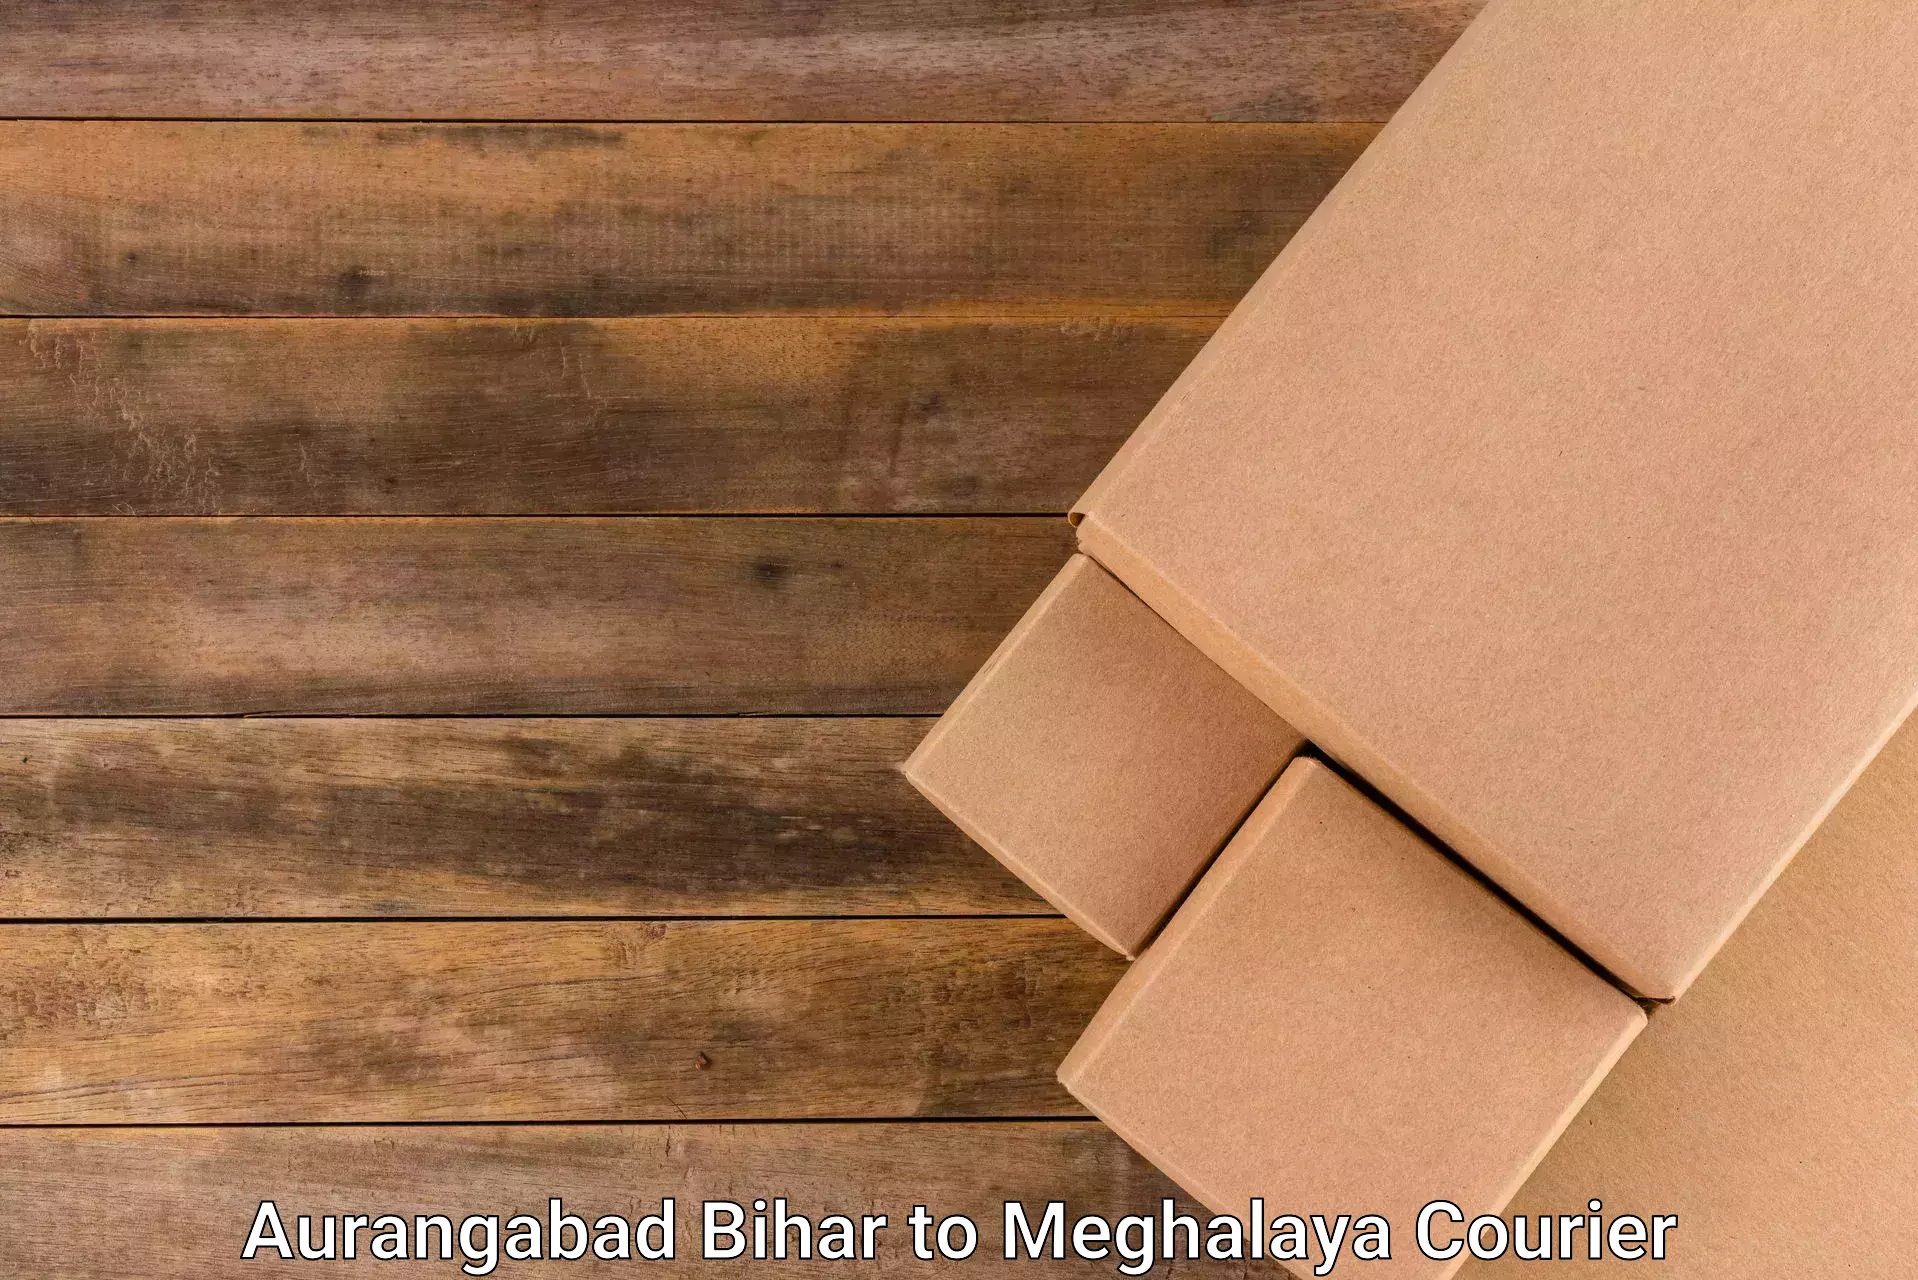 Cost-effective courier options Aurangabad Bihar to East Garo Hills